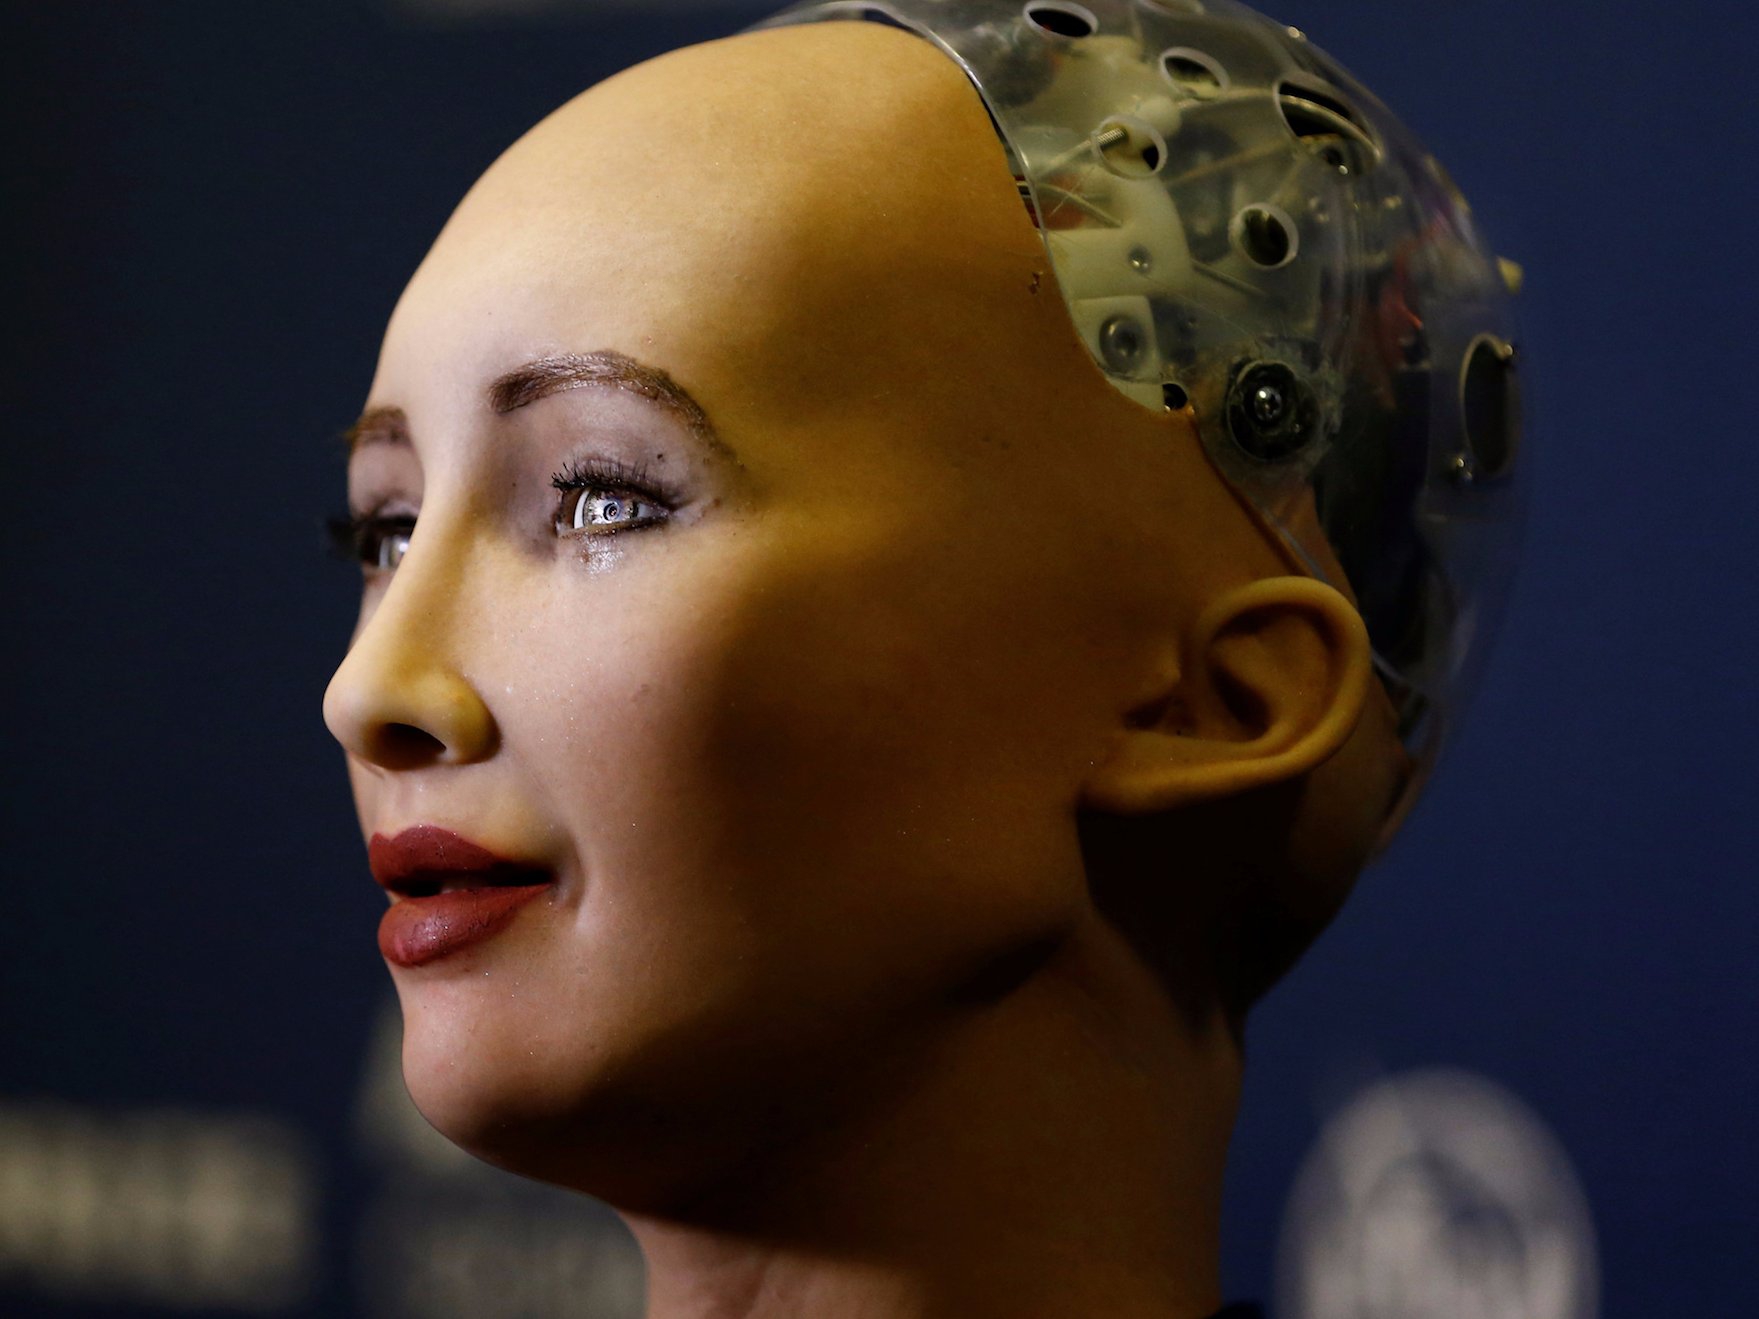 Sophia - công dân robot đầu tiên đang khiến dư luận thế giới đặc biệt quan tâm